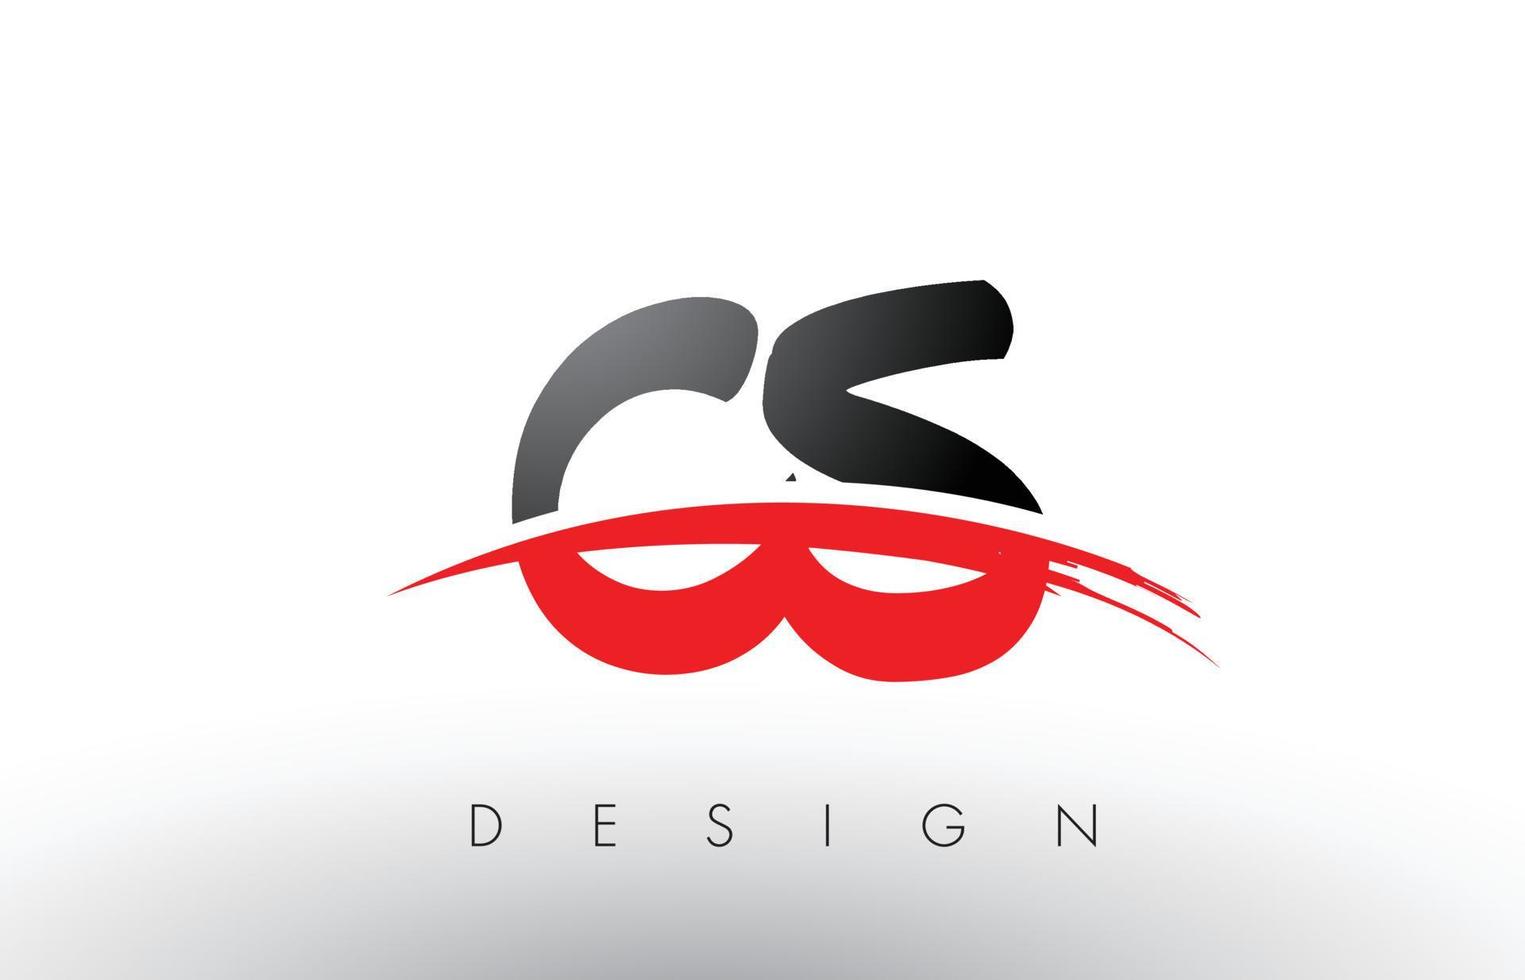 letras del logotipo del cepillo cs cs con frente de cepillo swoosh rojo y negro vector